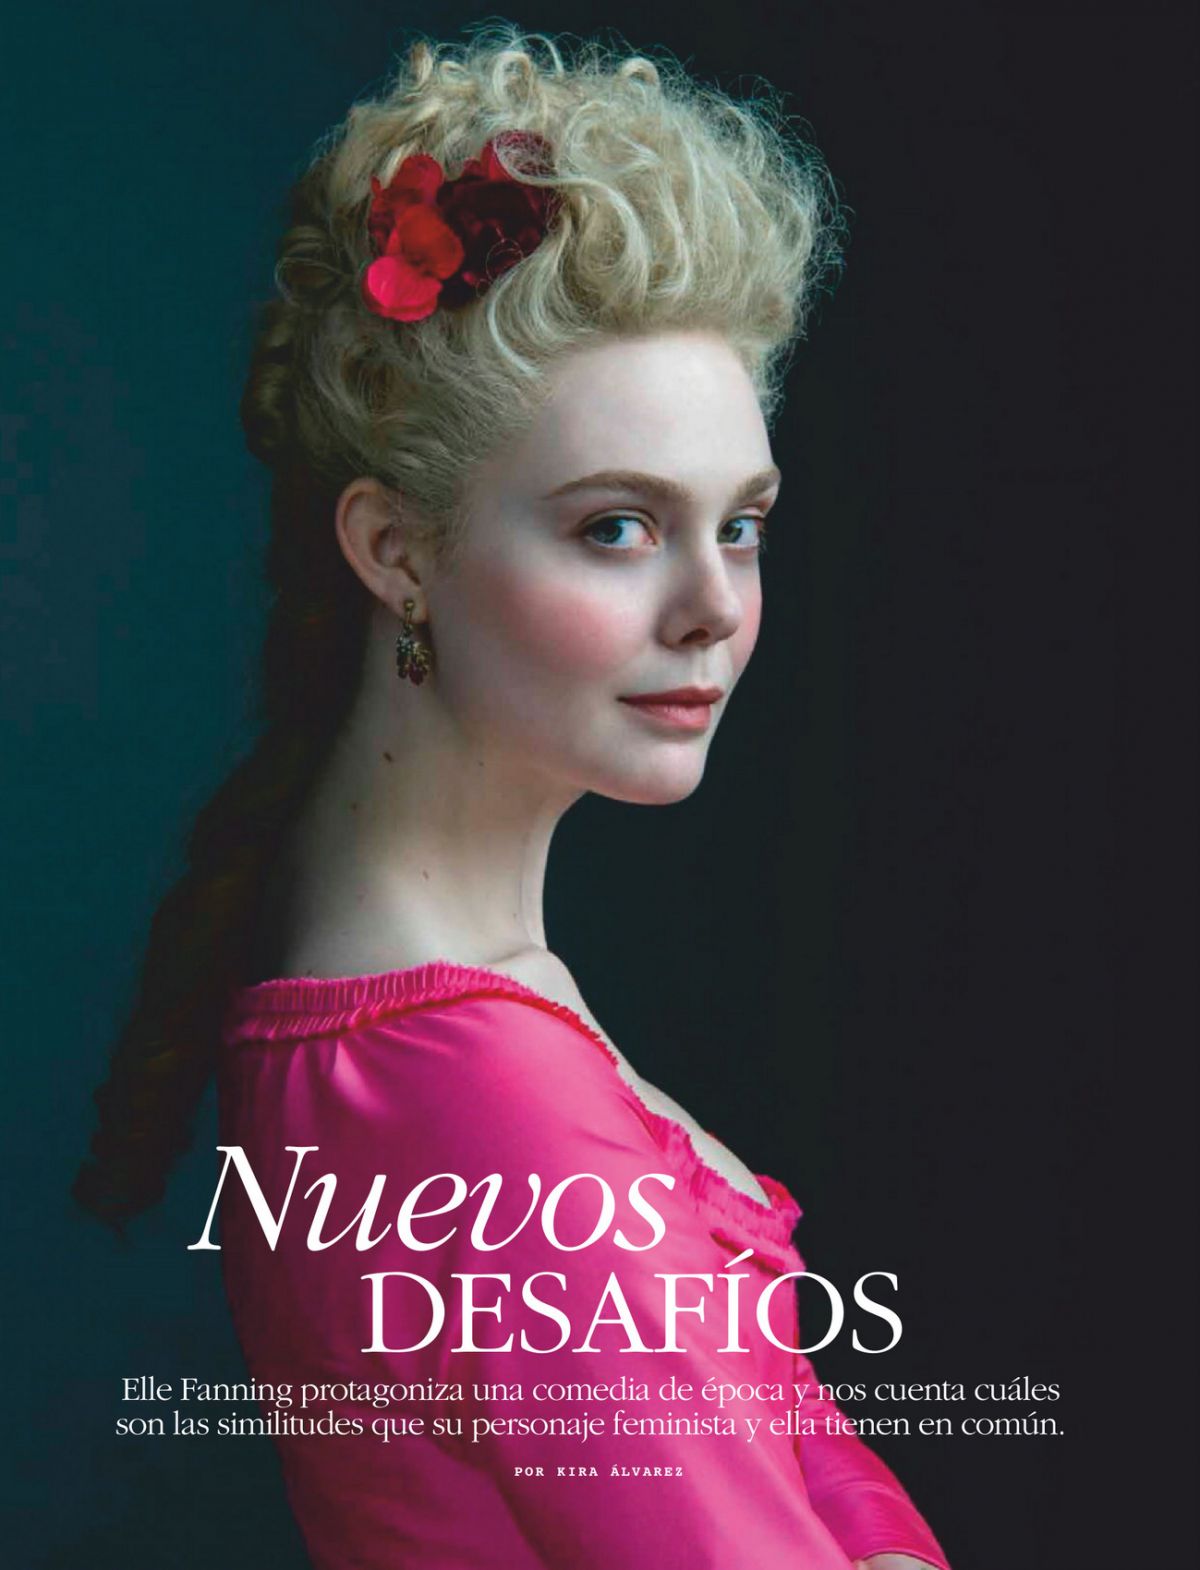 Elle Fanning in Nuevos Desafios, Mexico June 2020